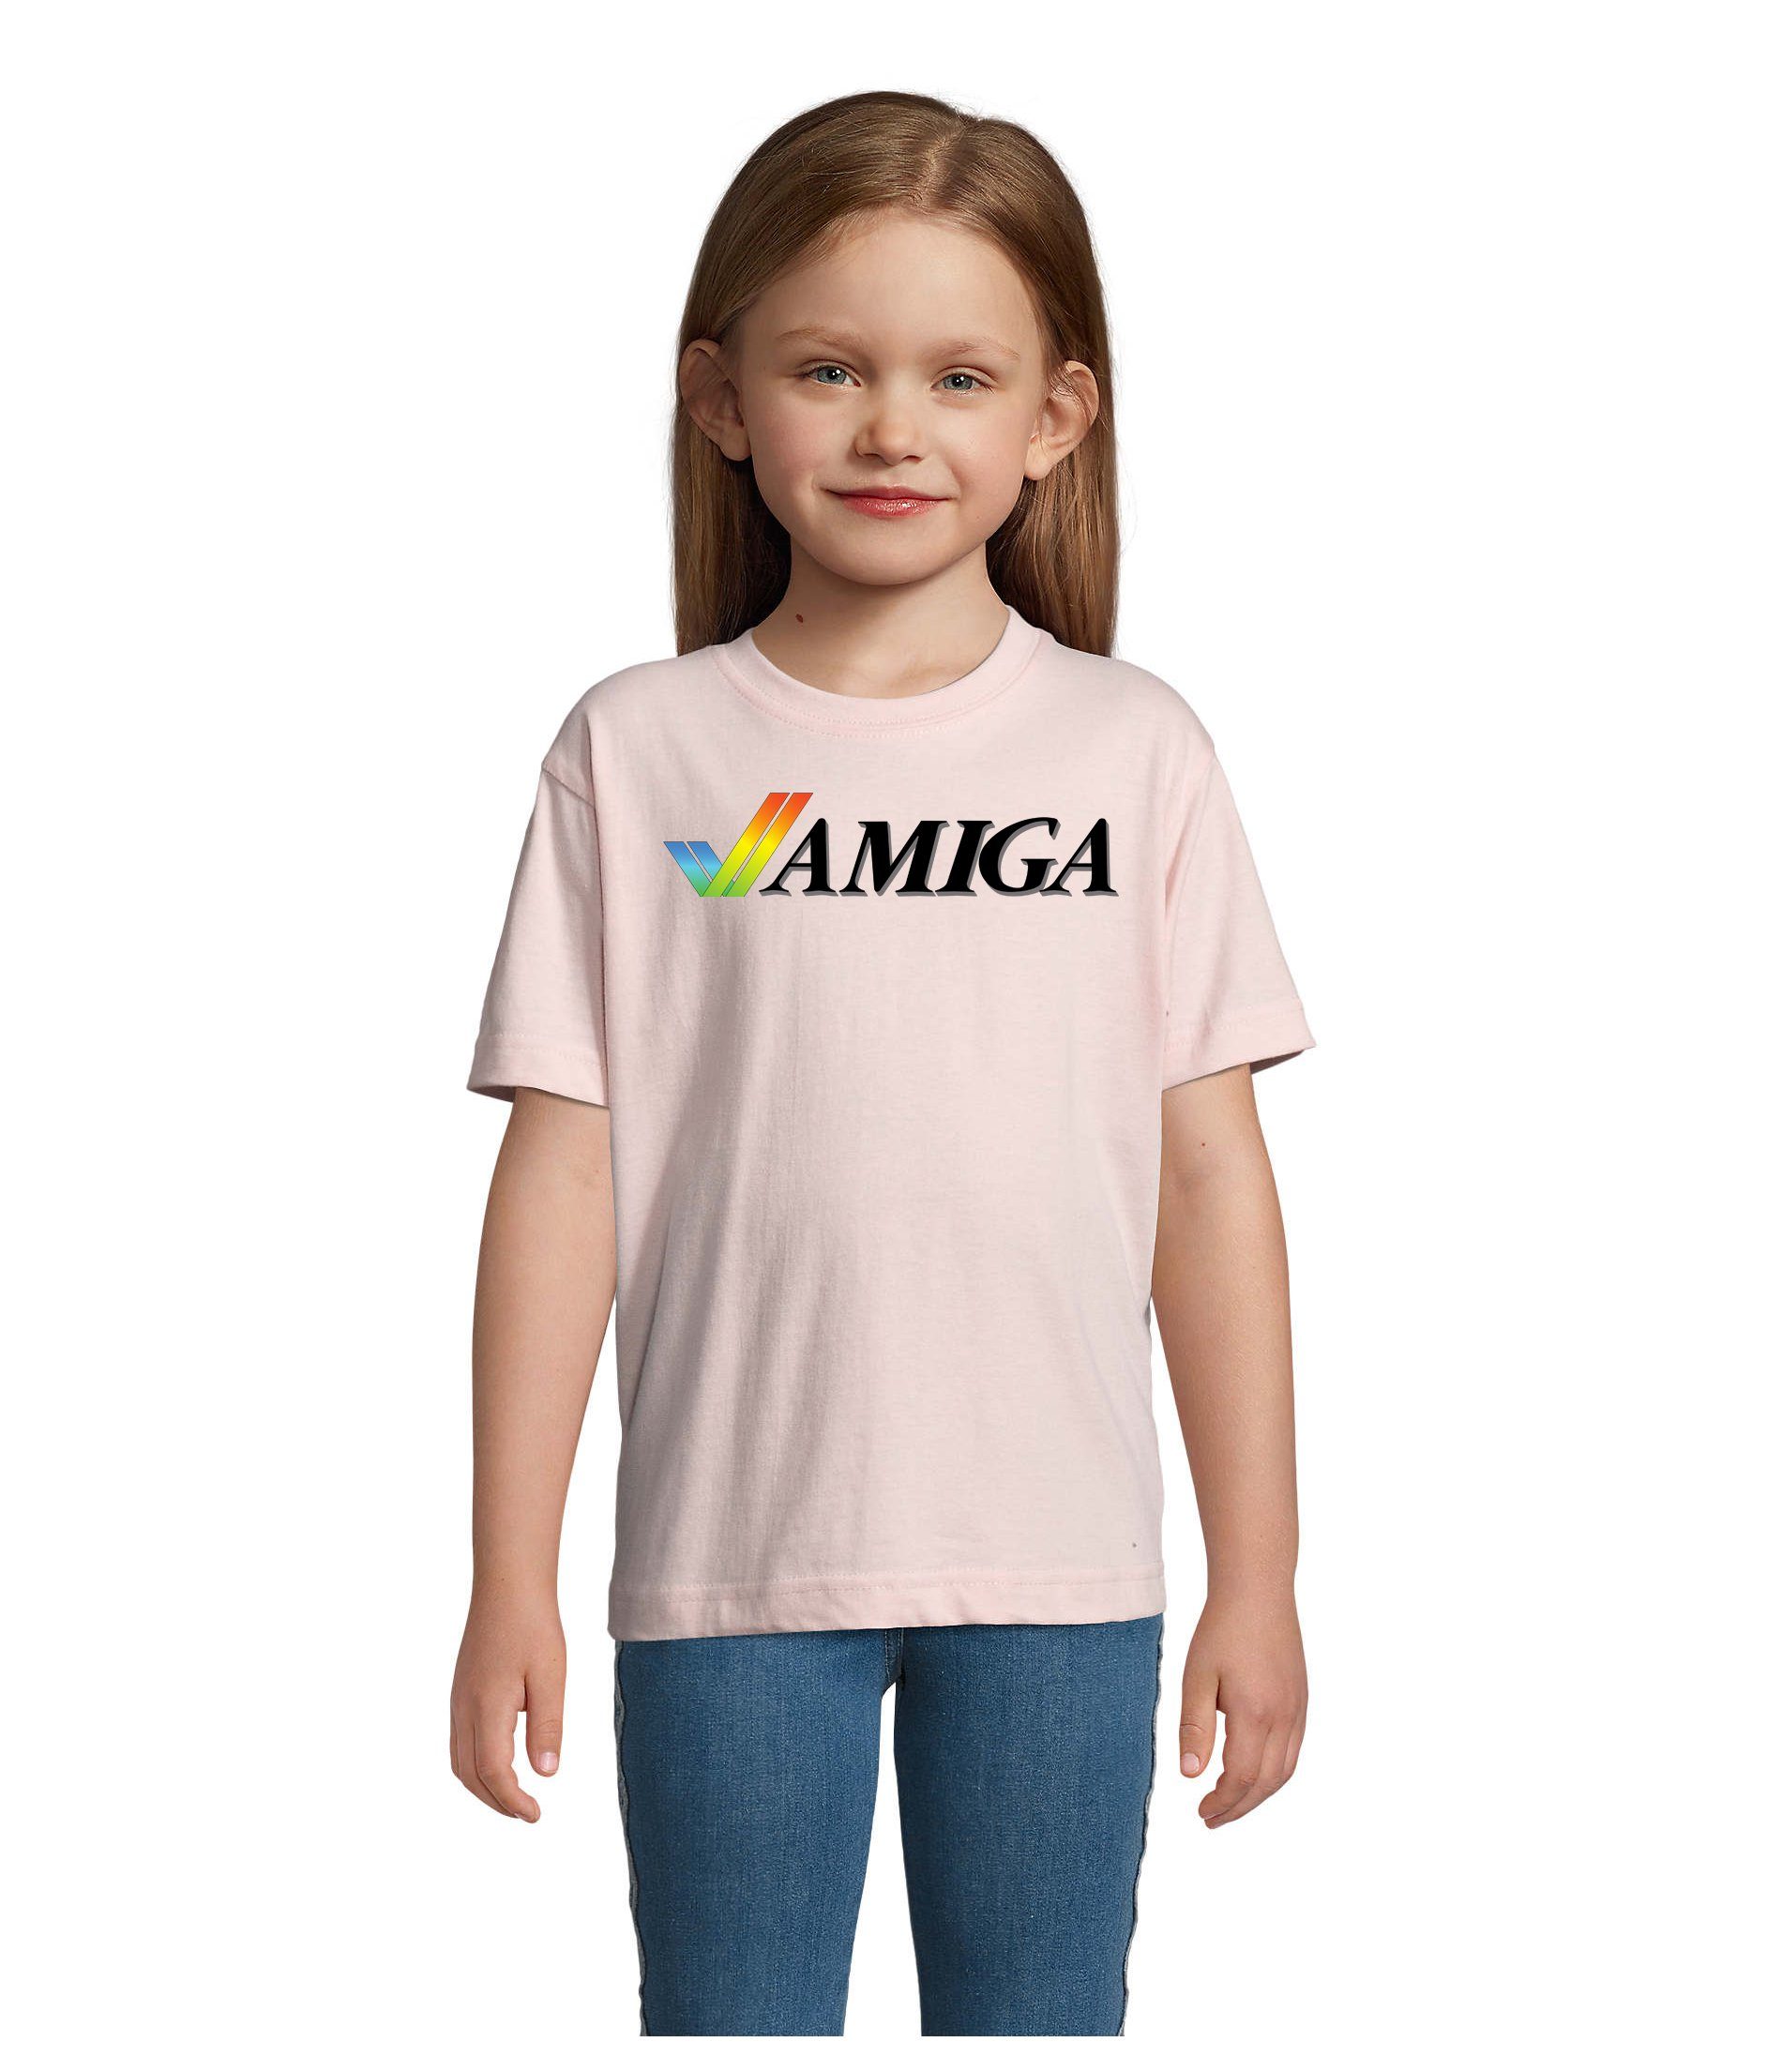 Blondie & Brownie T-Shirt Kinder Jungen & Mädchen Amiga Spiele Konsole Atari Commodore Nintendo Rosa